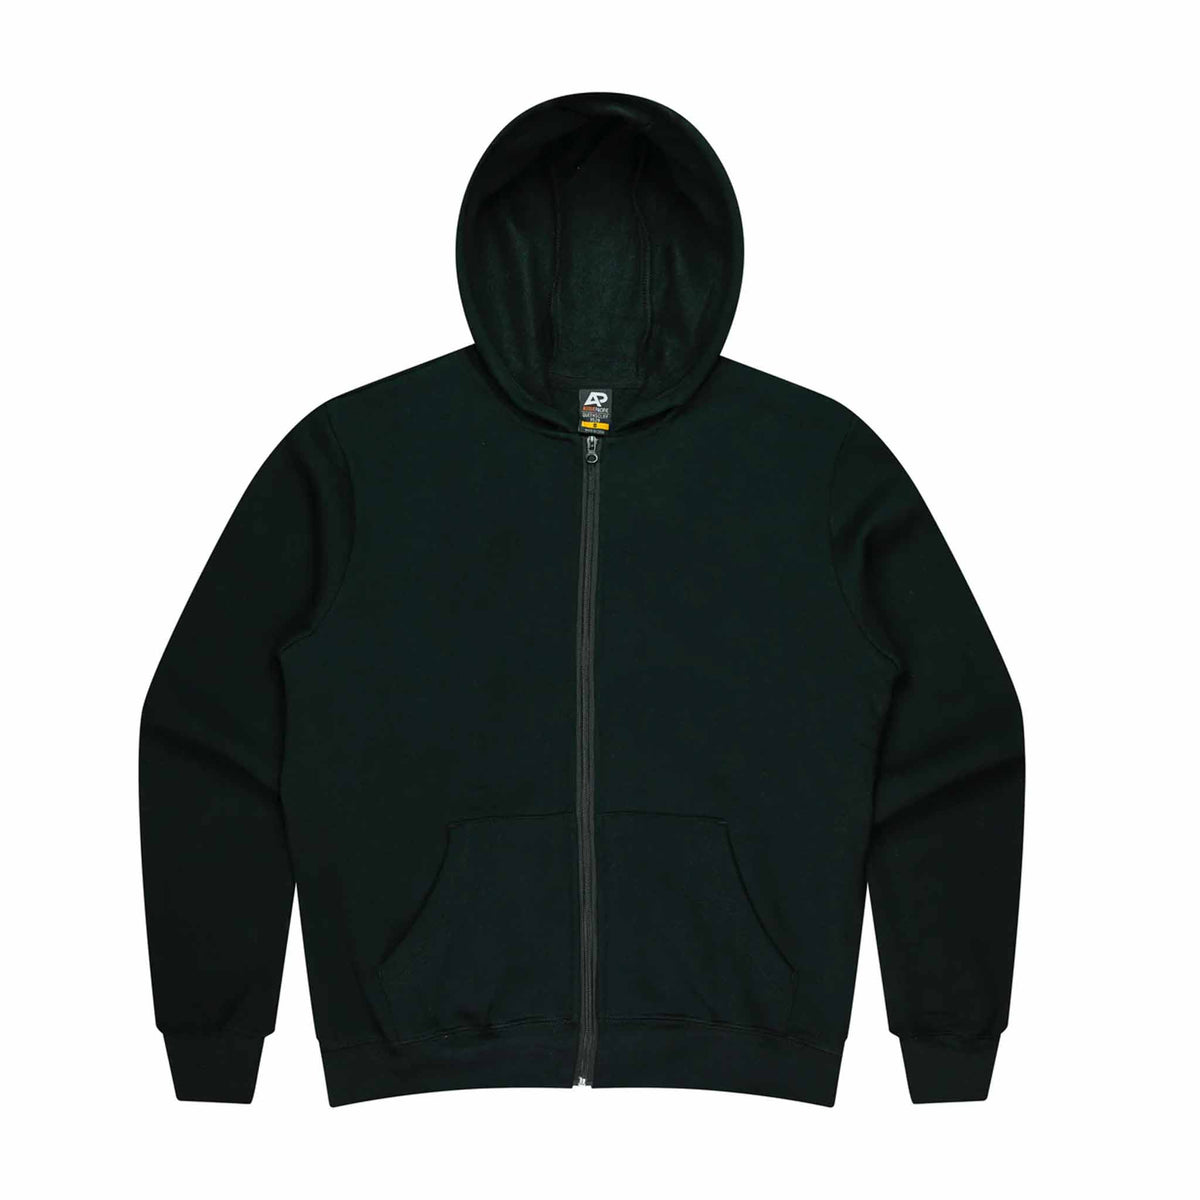 aussie pacific queenscliff zip kids hoodie in black